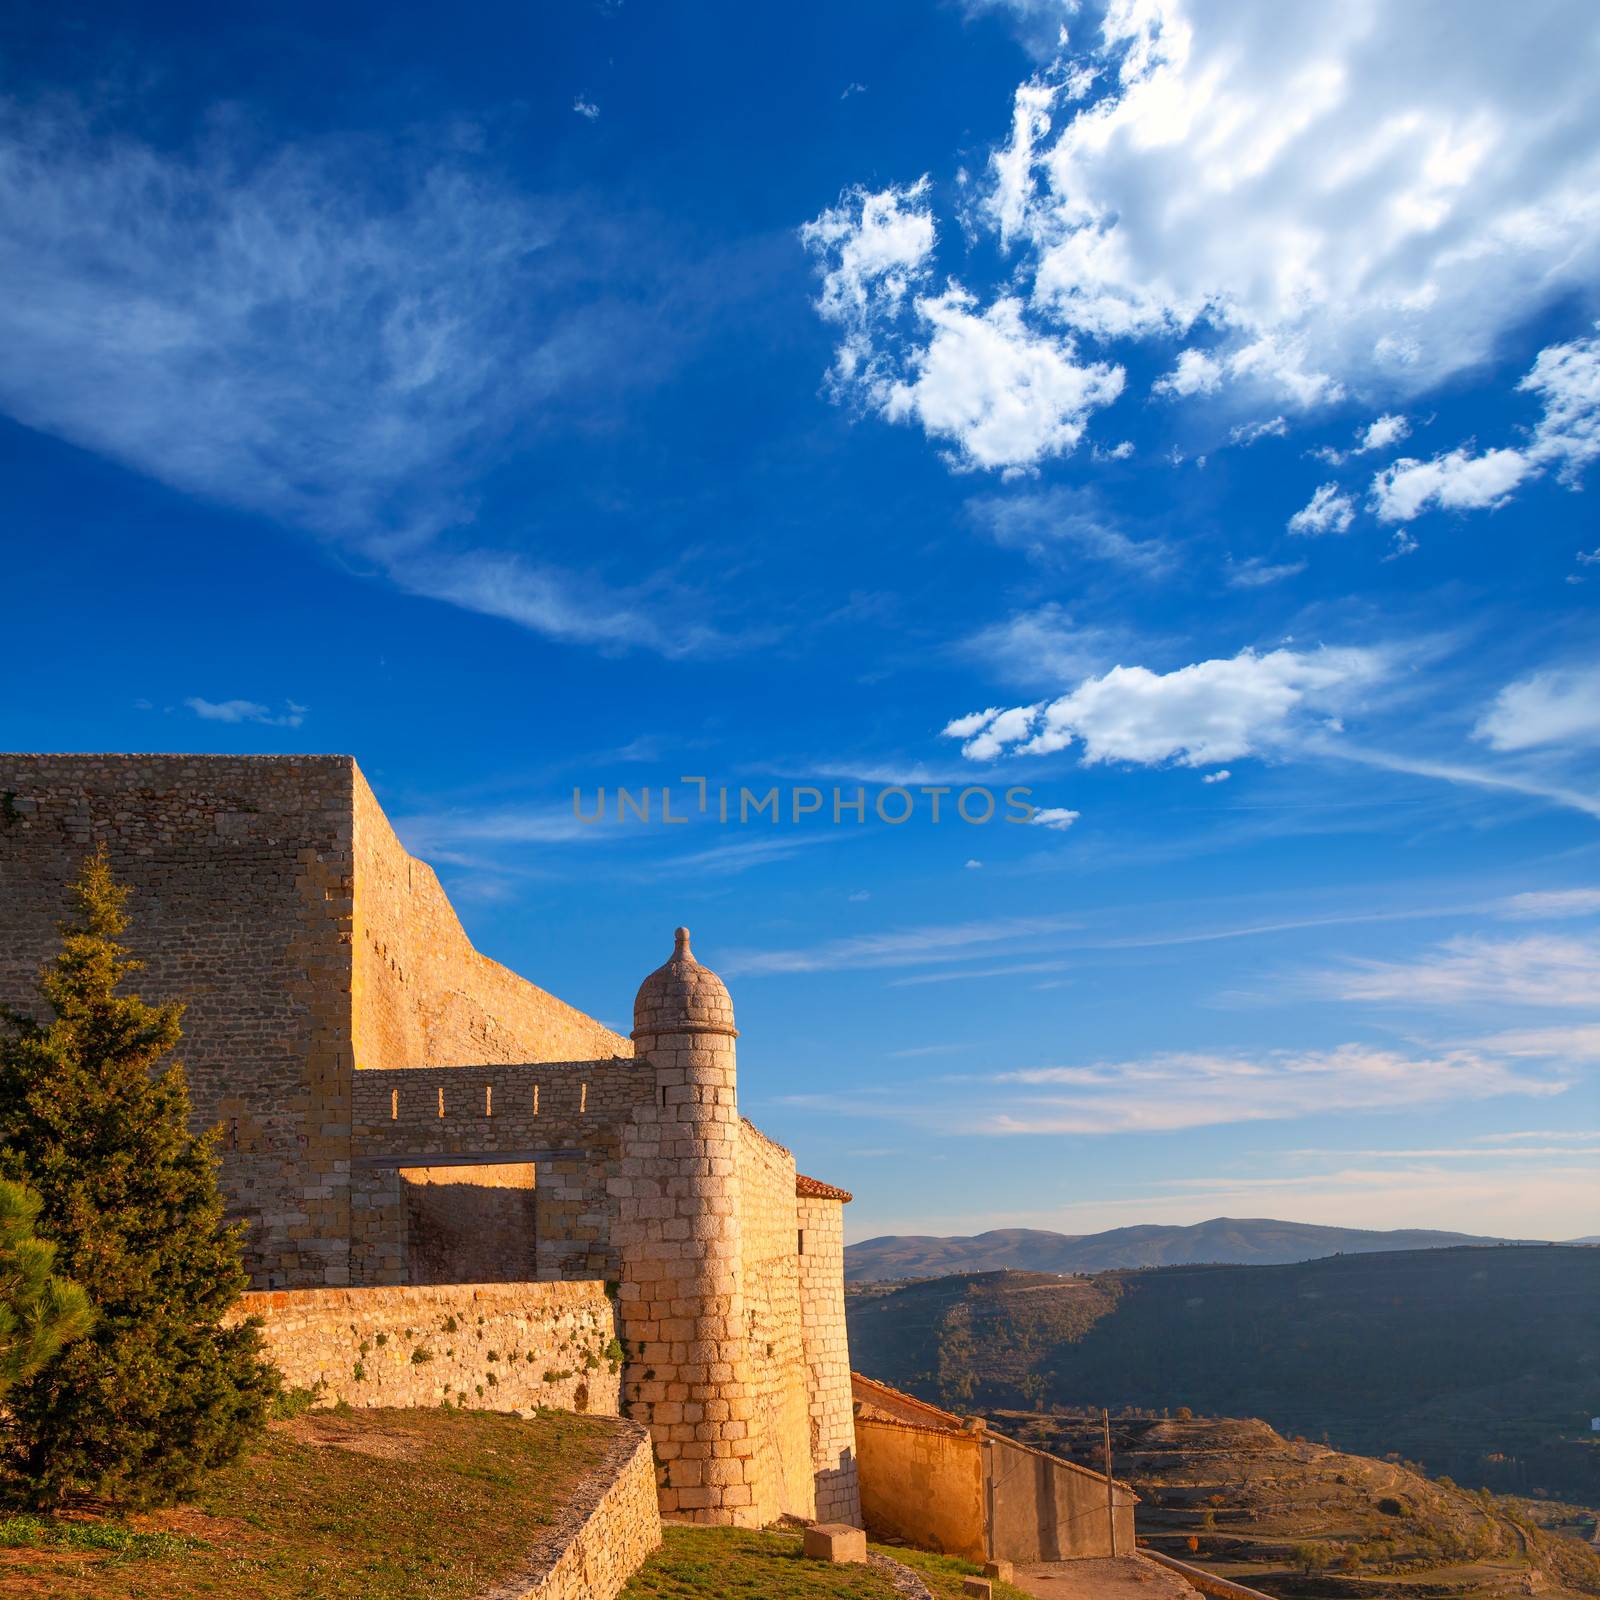 Morella in castellon Maestrazgo castle fort by lunamarina